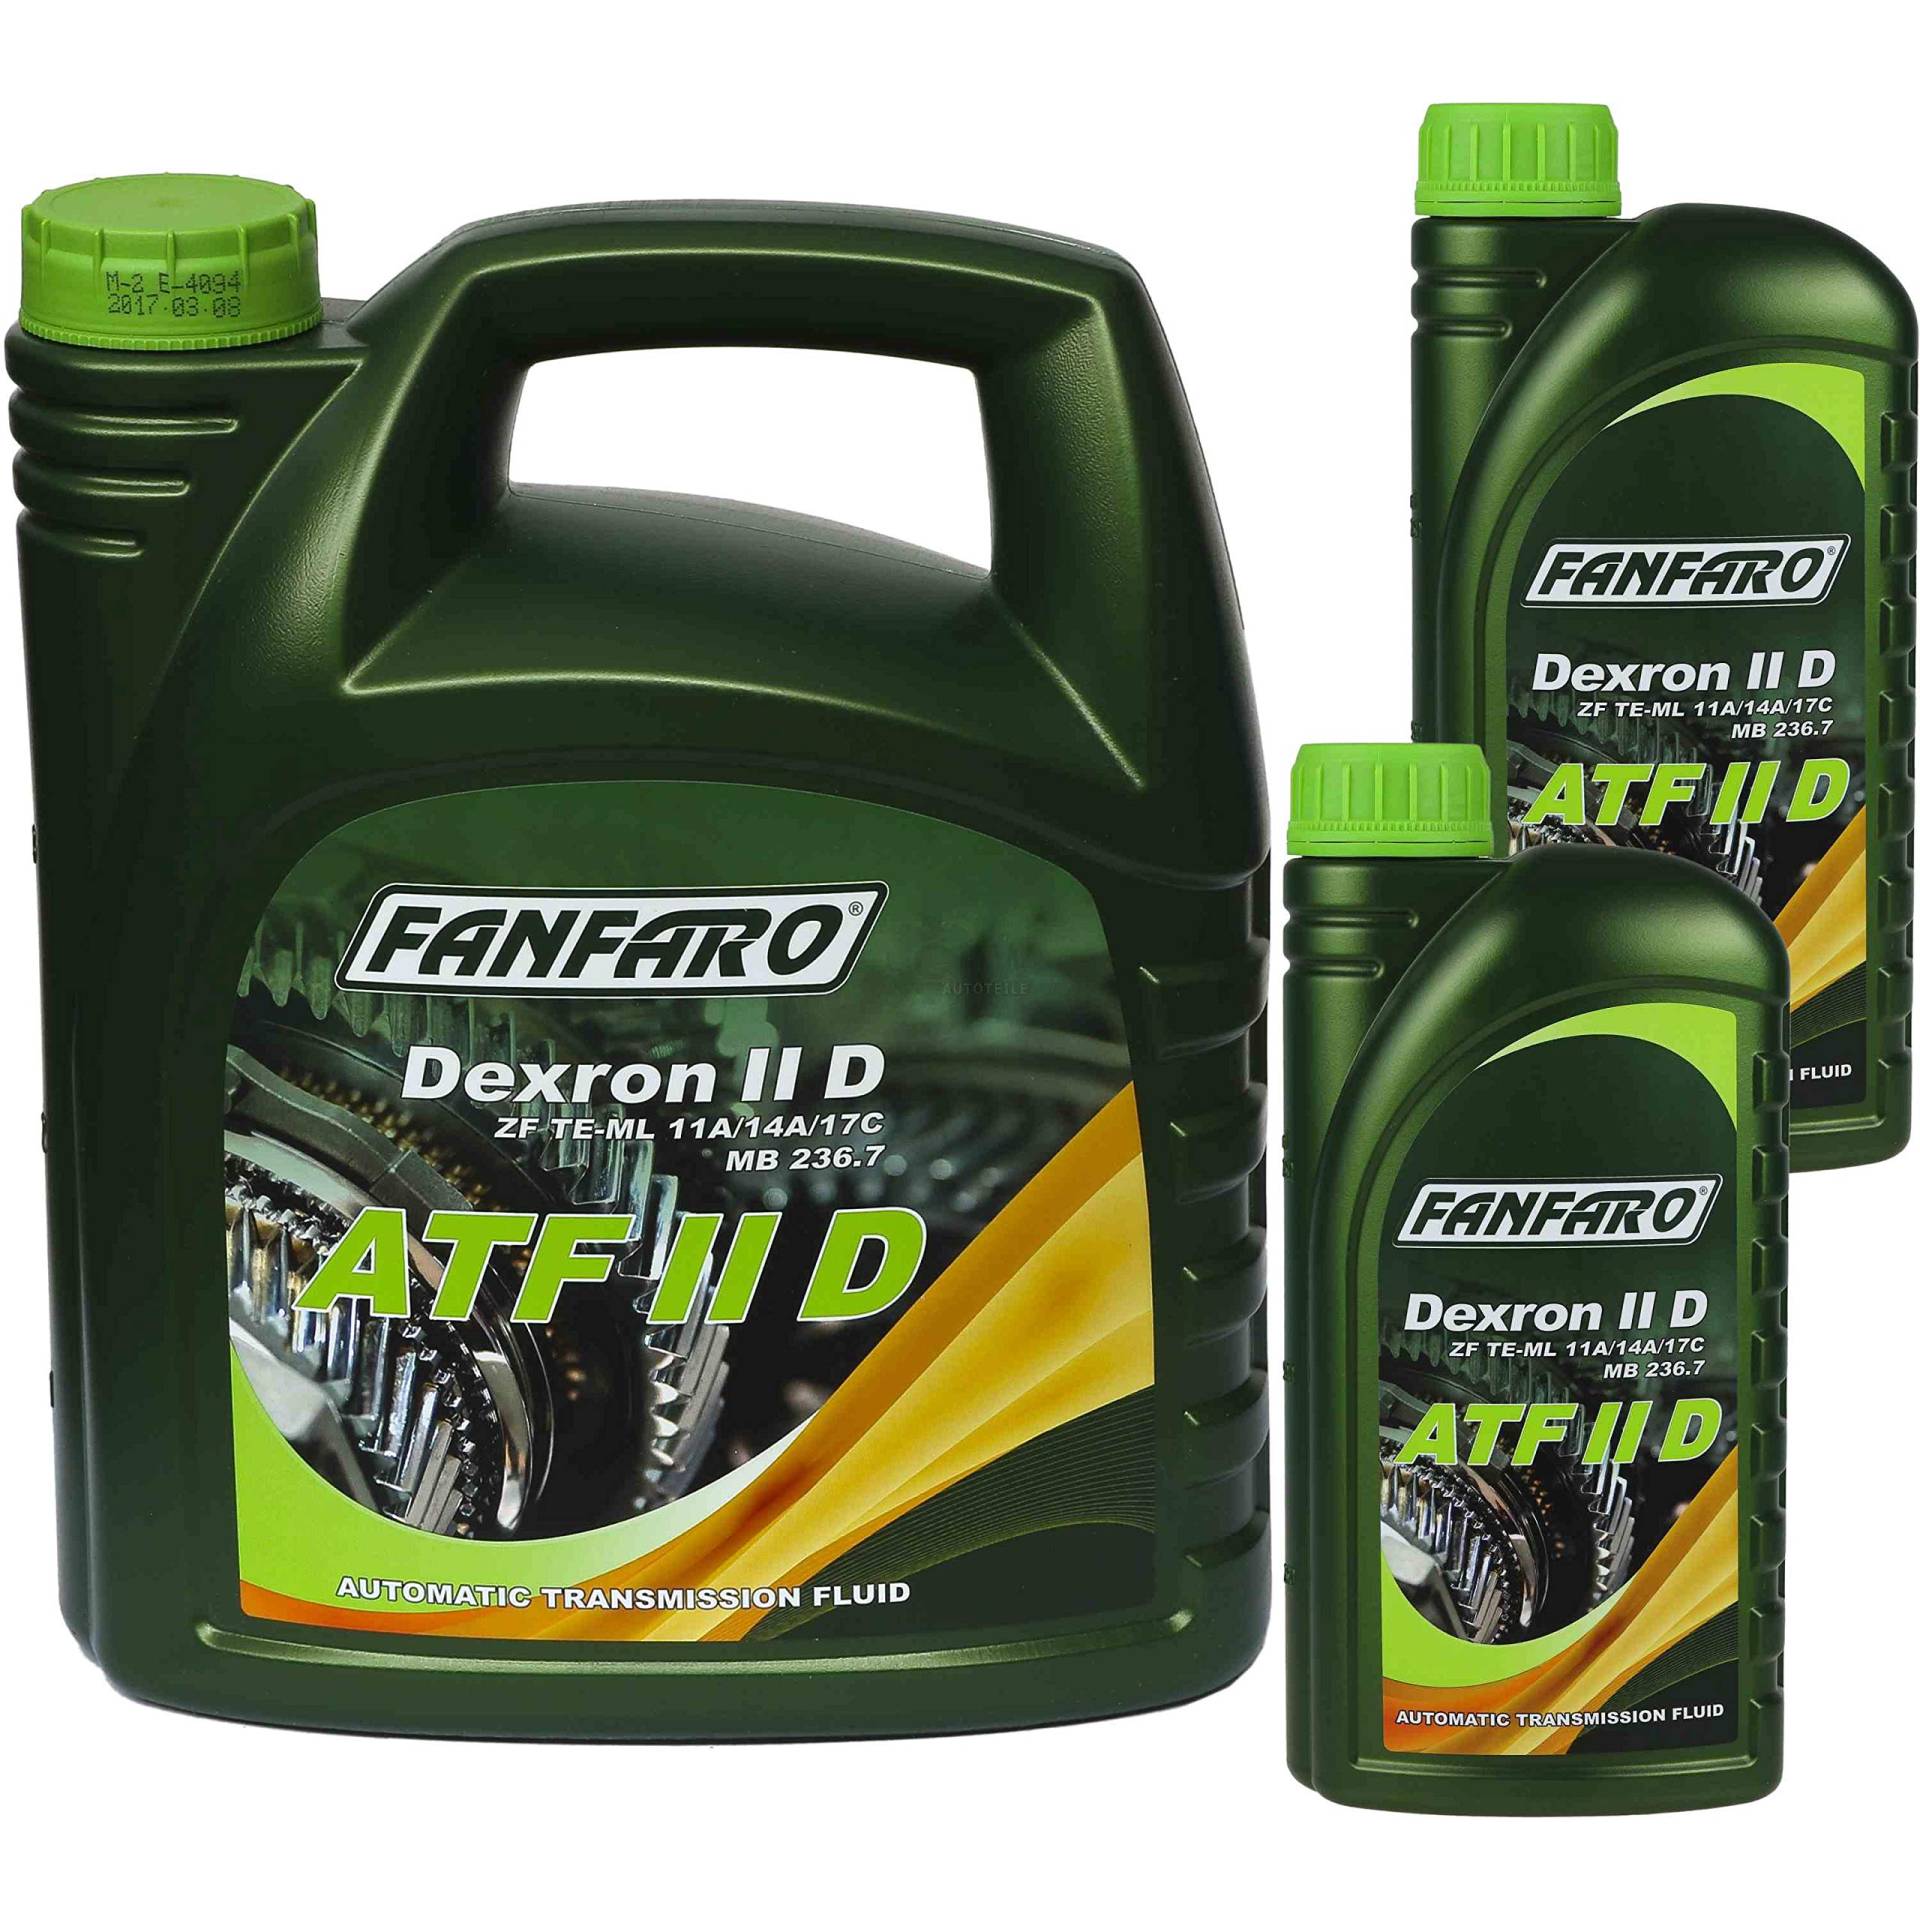 6 Liter Original FANFARO Automatikgetriebeöl ATF IID Gear Oil Öl von Diederichs